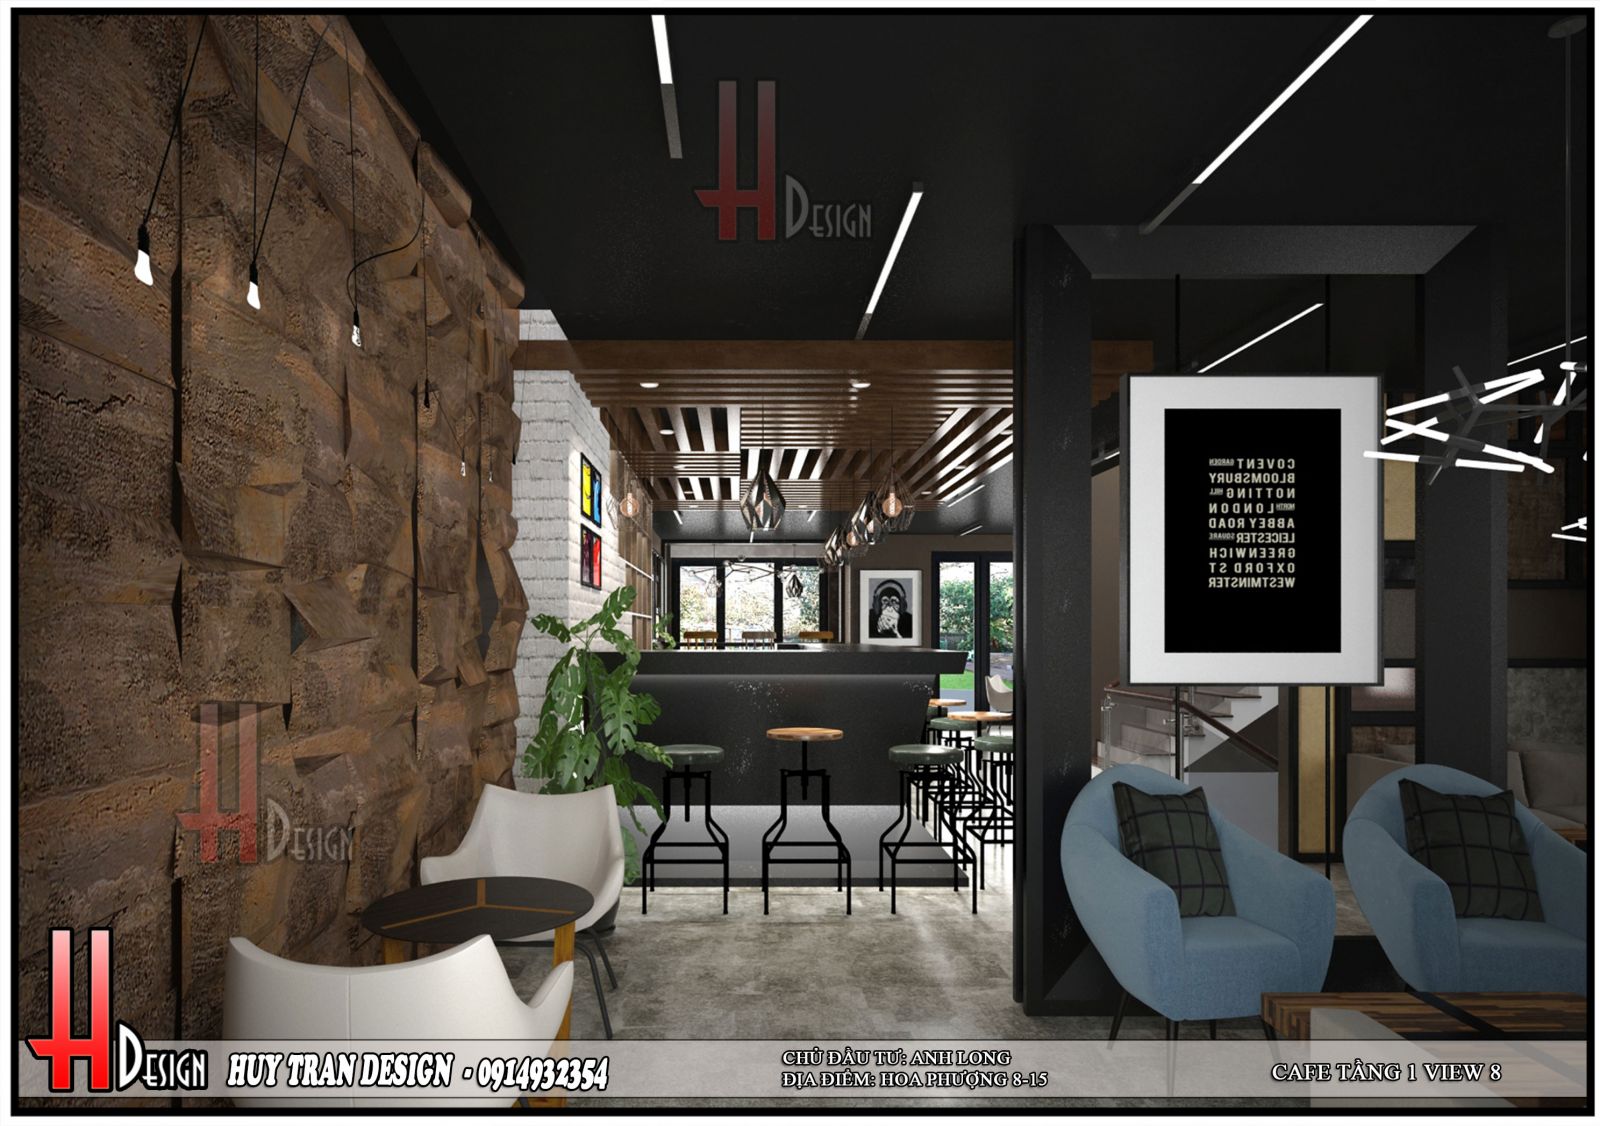 Phối cảnh thiết kế nội thất khu kinh doanh cafe biệt thự Hoa Phượng - Long Biên - Hà Nội - Huytrandesign tư vấn, thiết kế, thi công, sửa chữa nhà cửa, biệt thự-v8